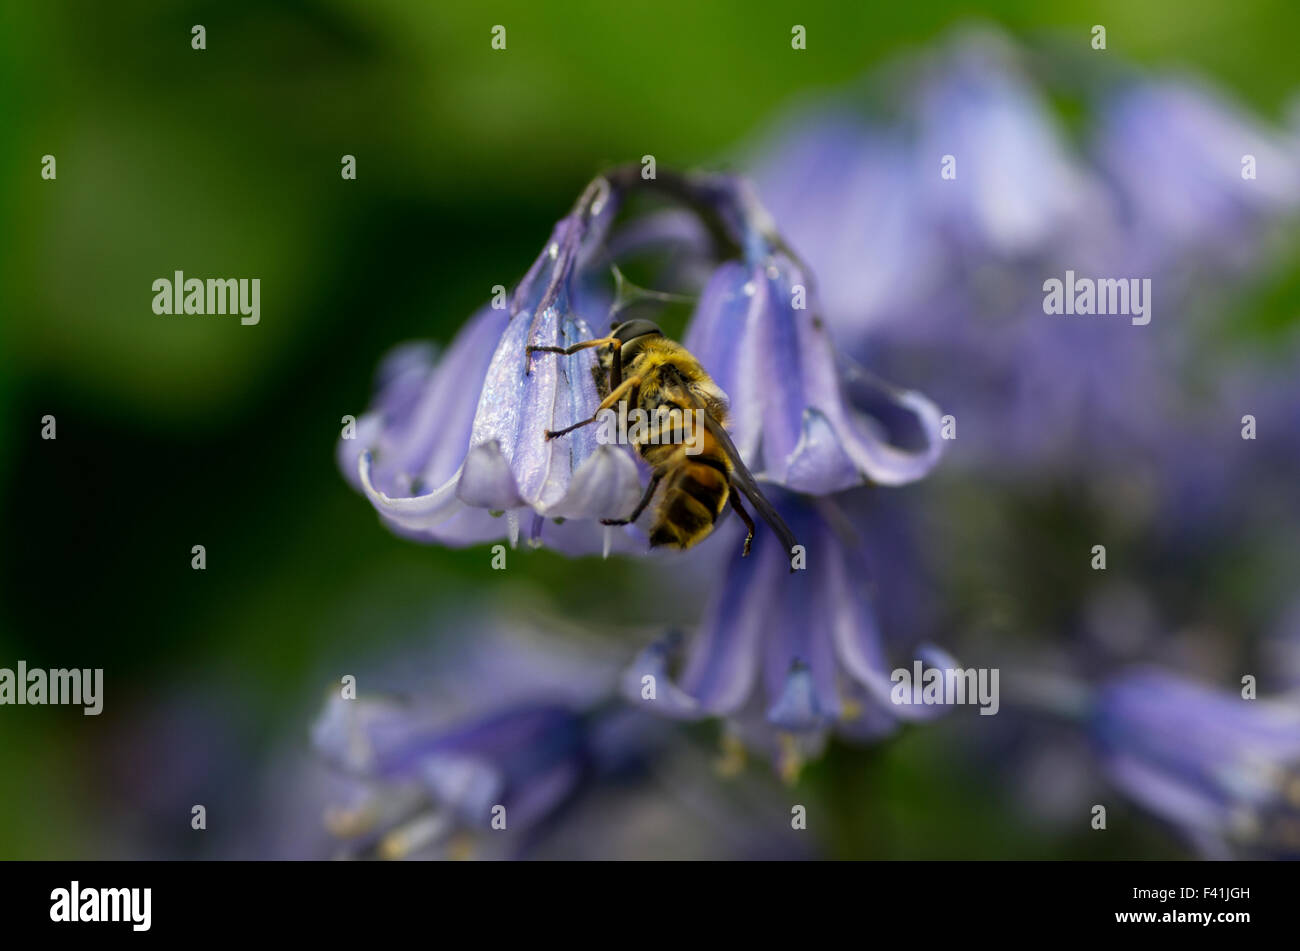 A honey bee gathering pollen on a bluebell flower Hyacinthoides, Endymion non-scriptus or Scilla non-scripta Stock Photo